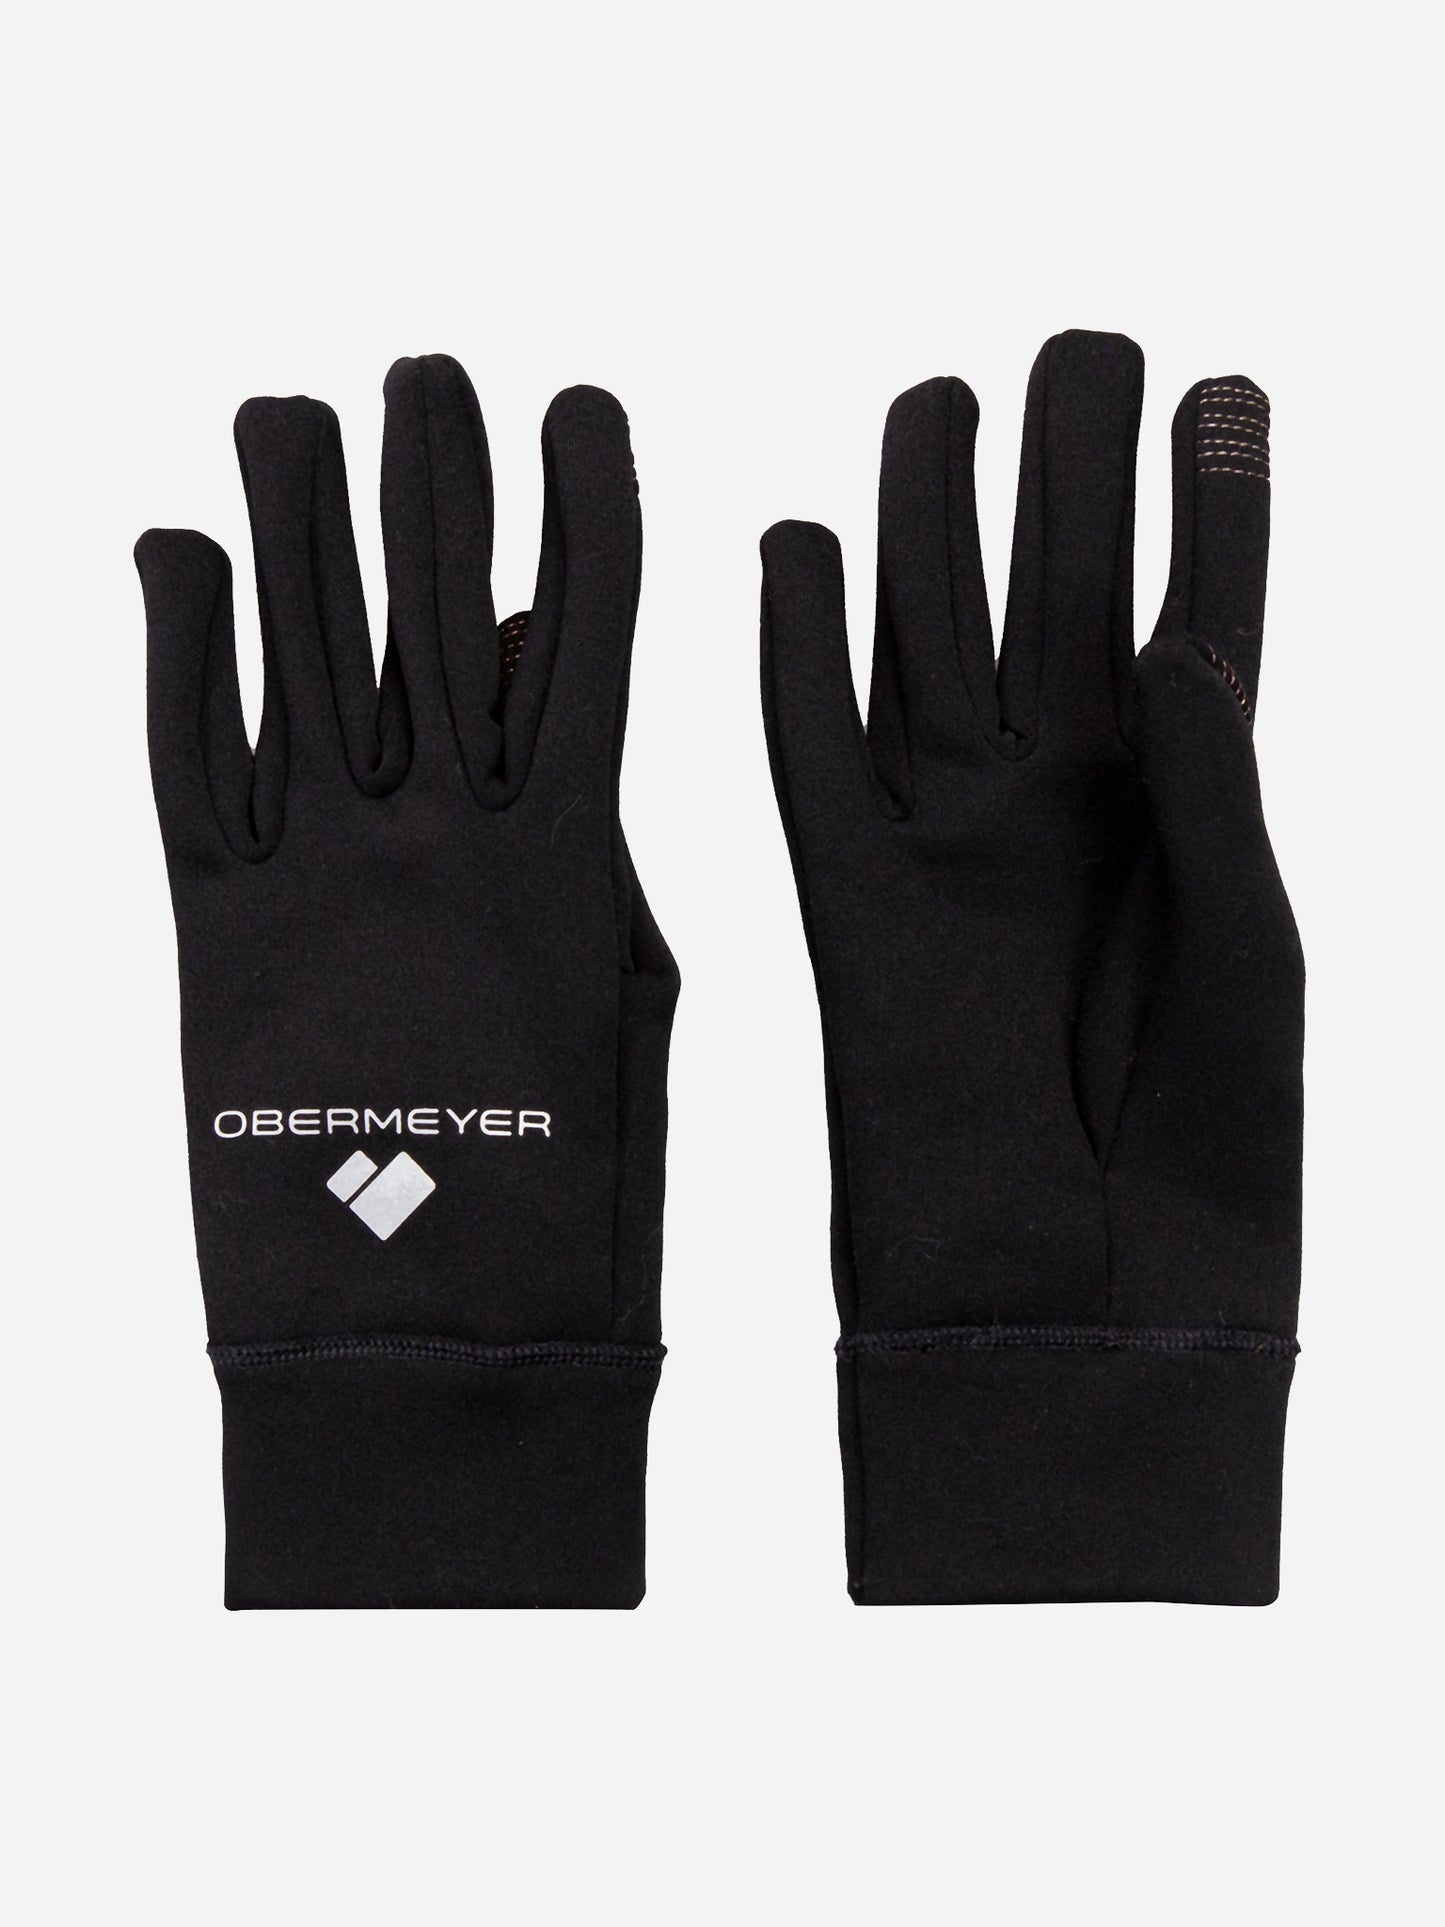 Obermeyer Men's Liner Glove